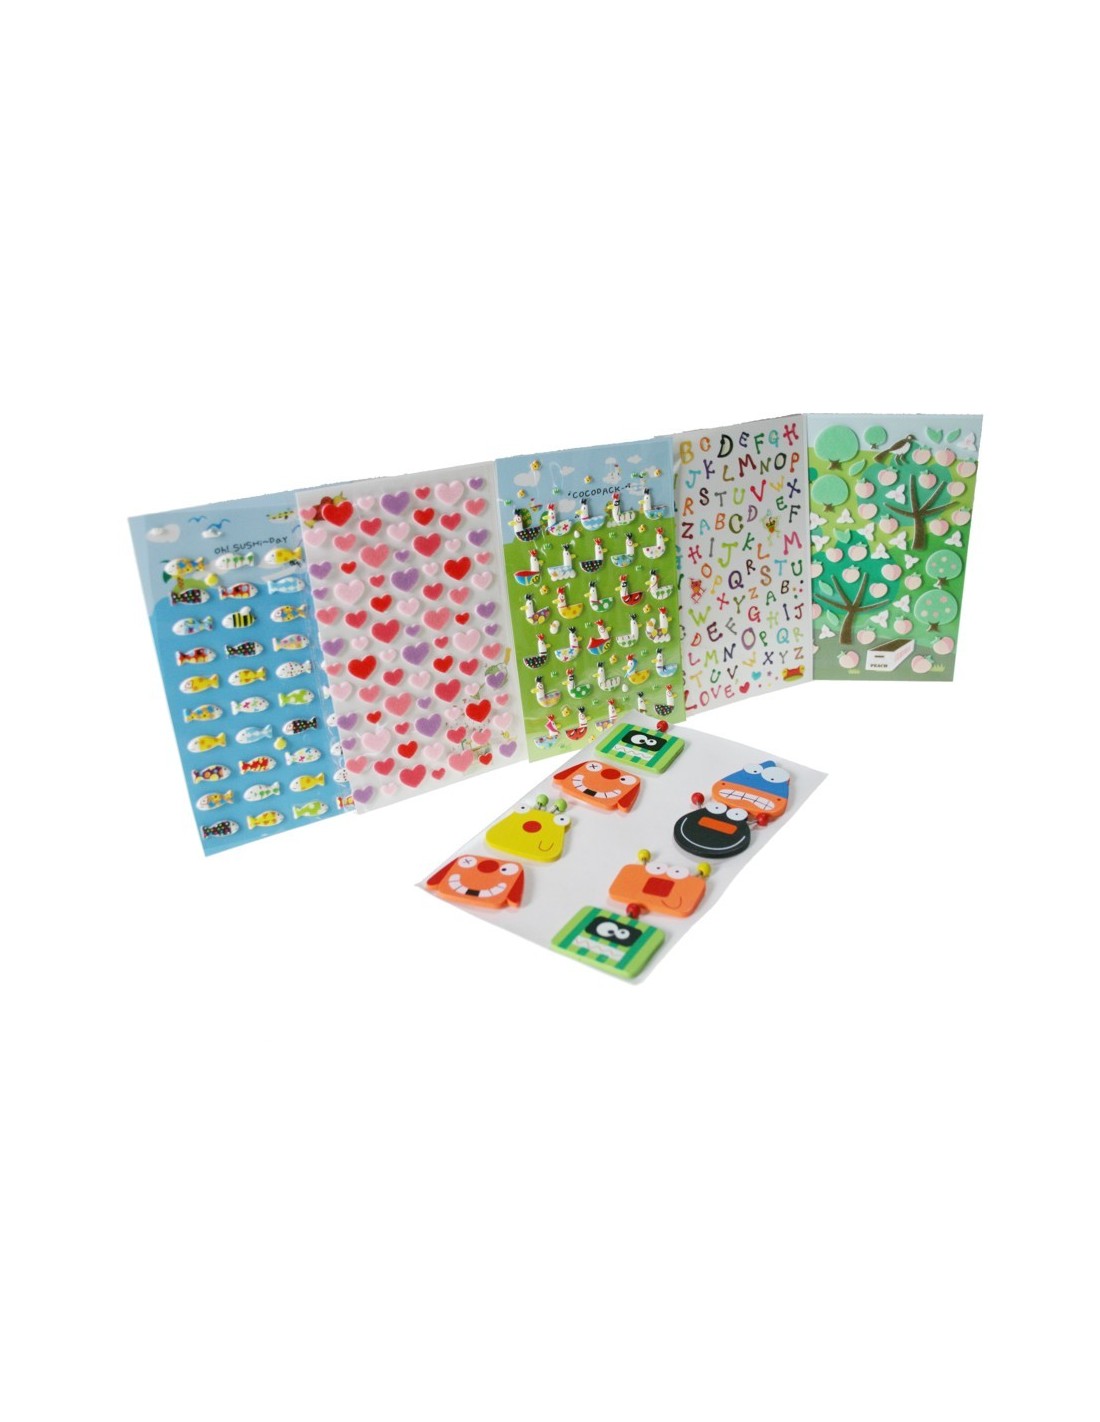 Pegatinas set de 6 unidades para decorar las libretas y carpetas manualidad creativa para niño niña